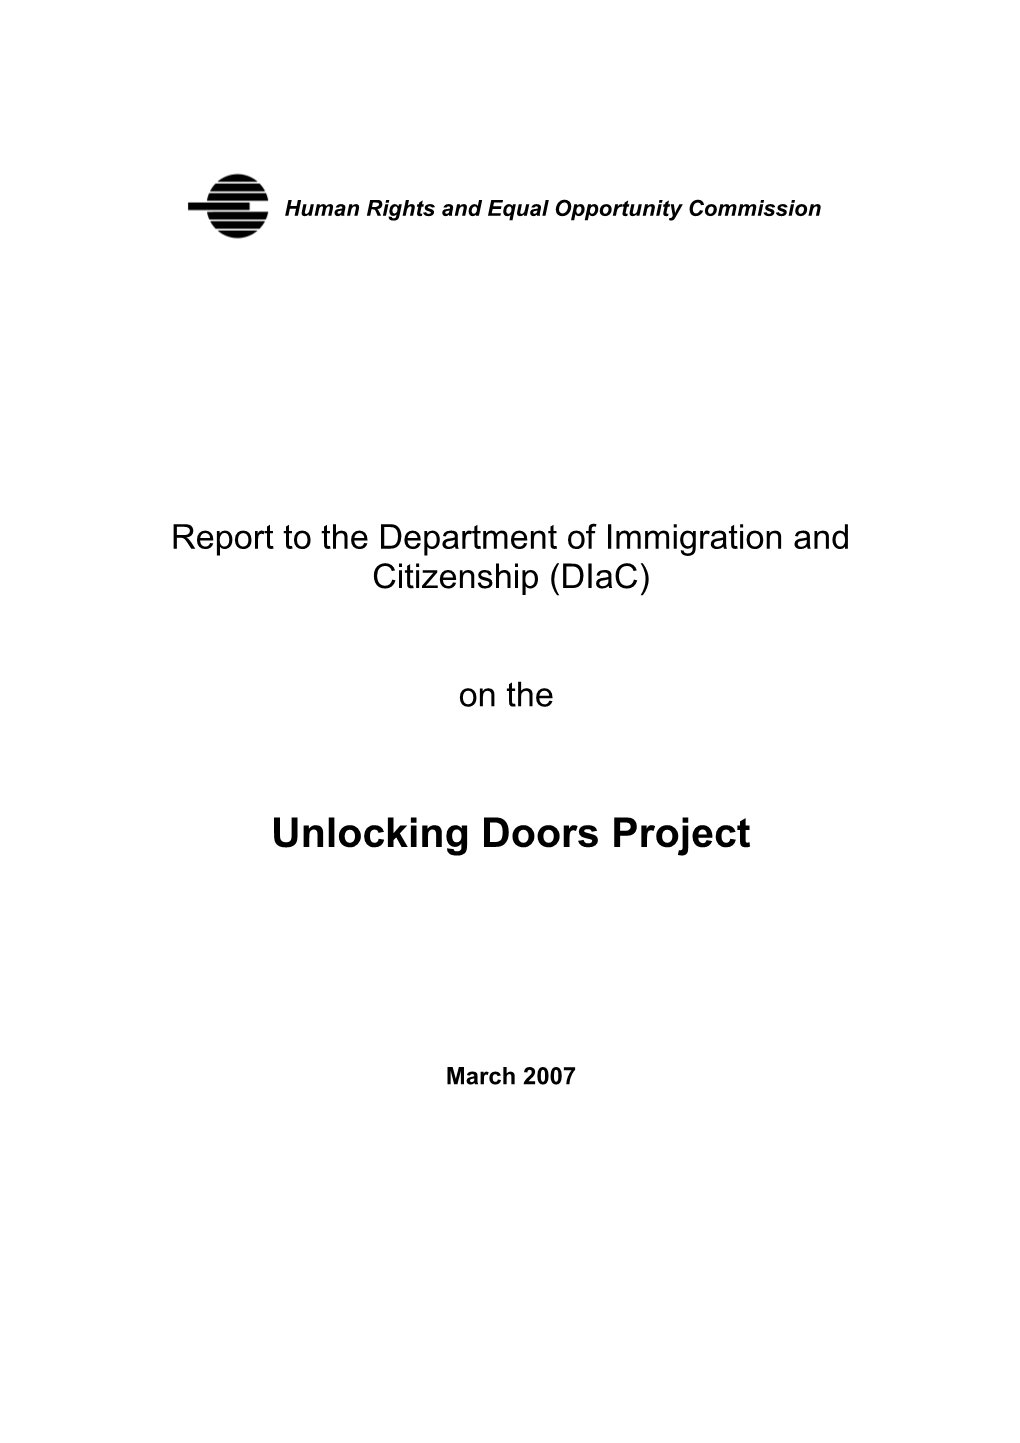 Unlocking Doors Project Report